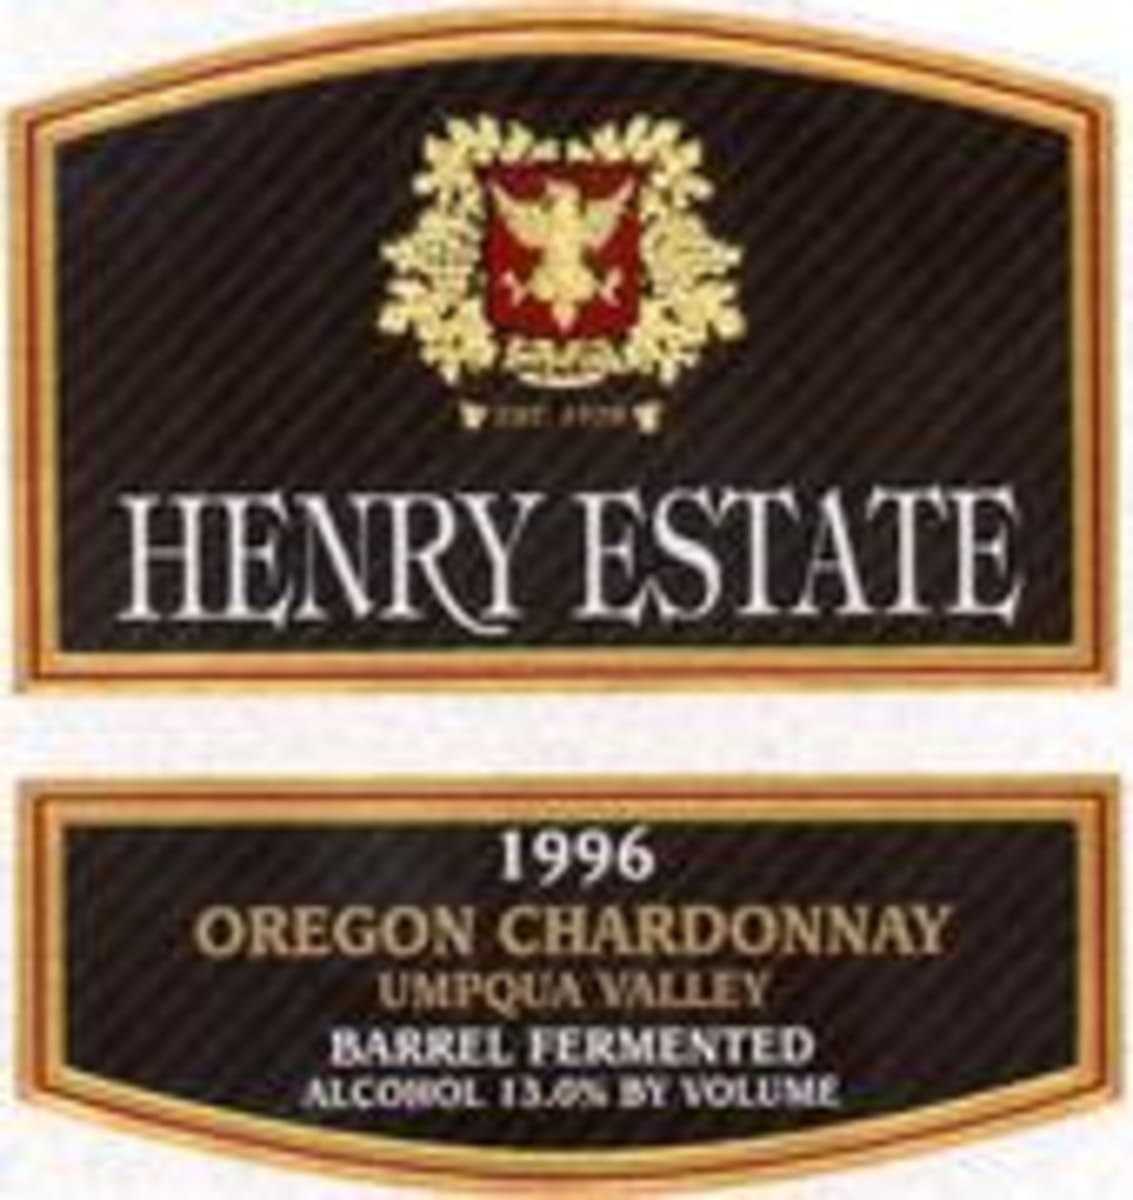 Henry Estate Barrel Fermented Chardonnay 1996 Front Label